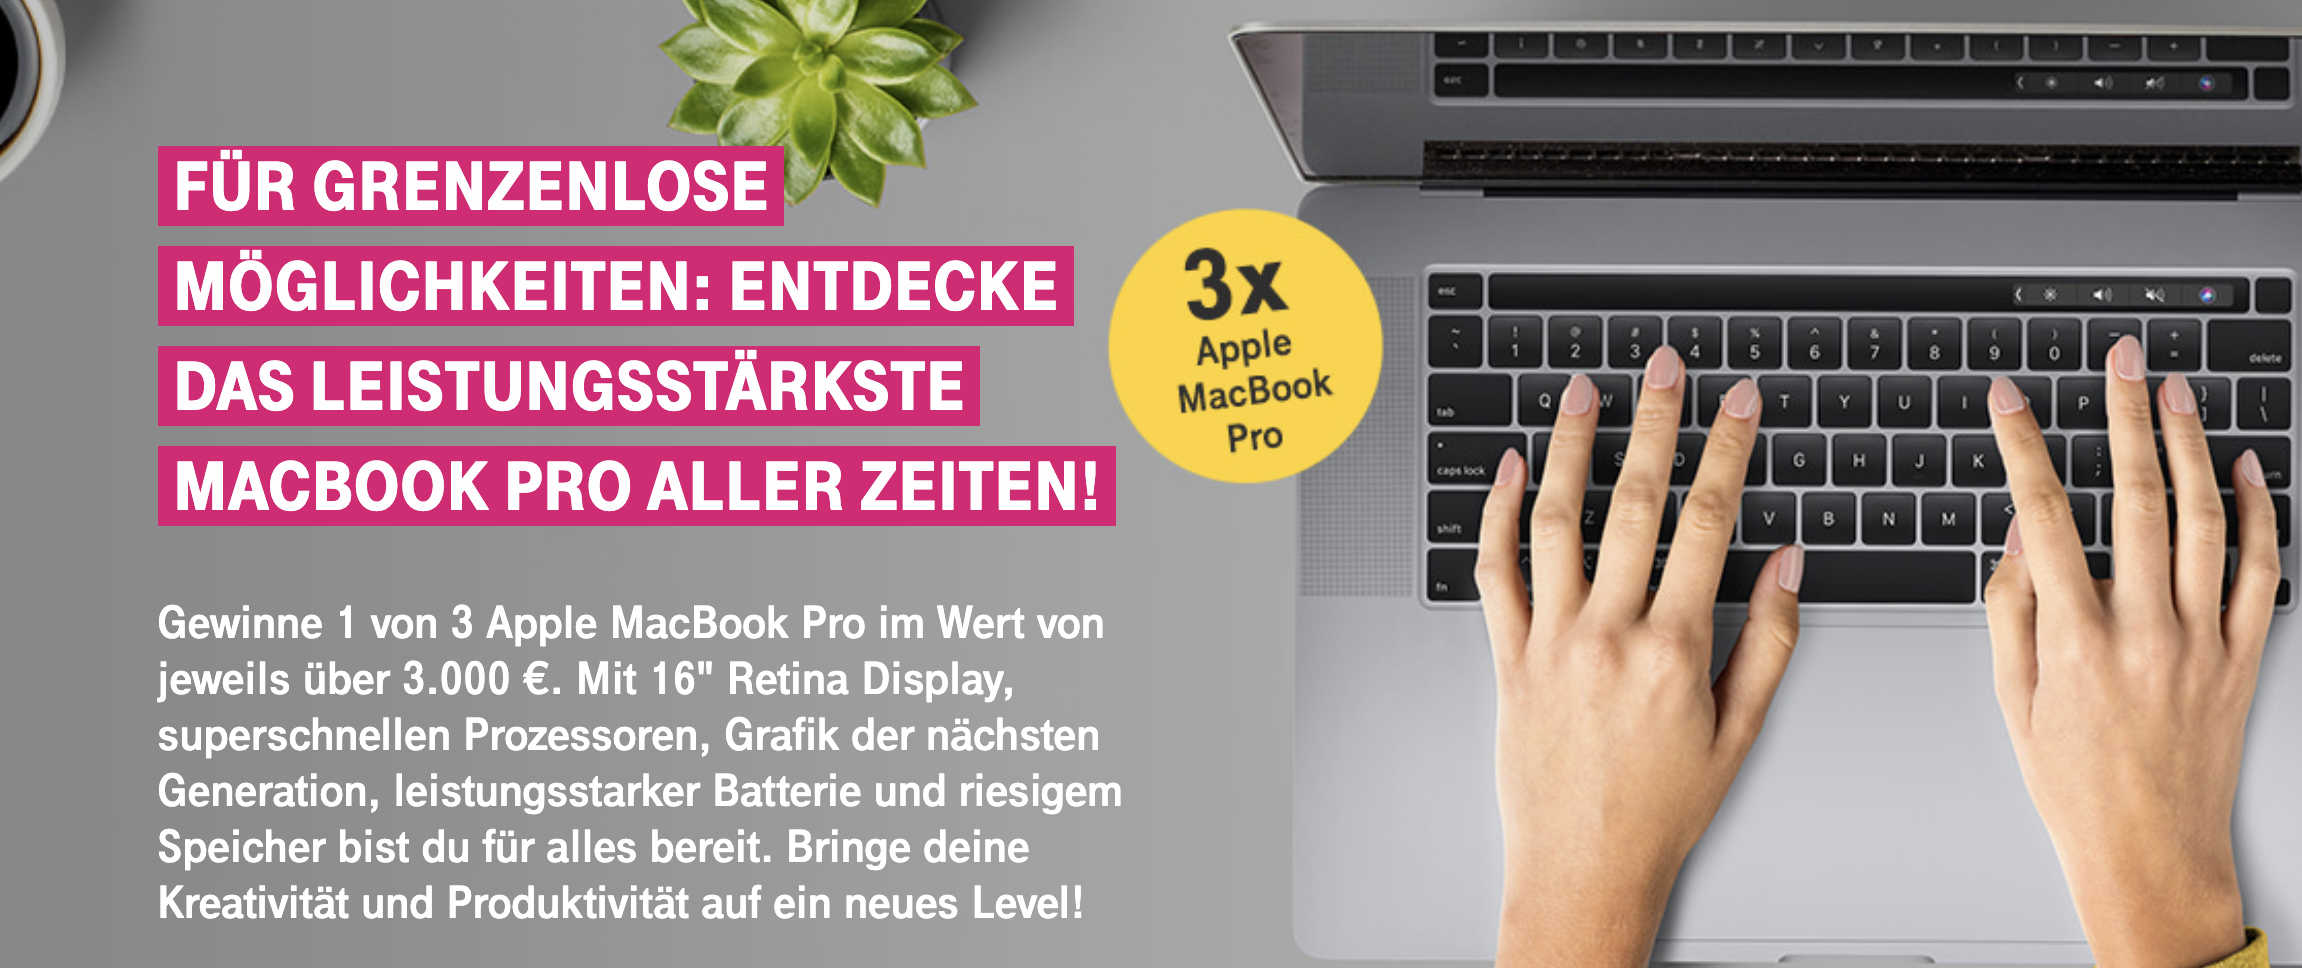 Deutsche Telekom Gewinnspiel: drei Apple MacBook Pro zu gewinnen